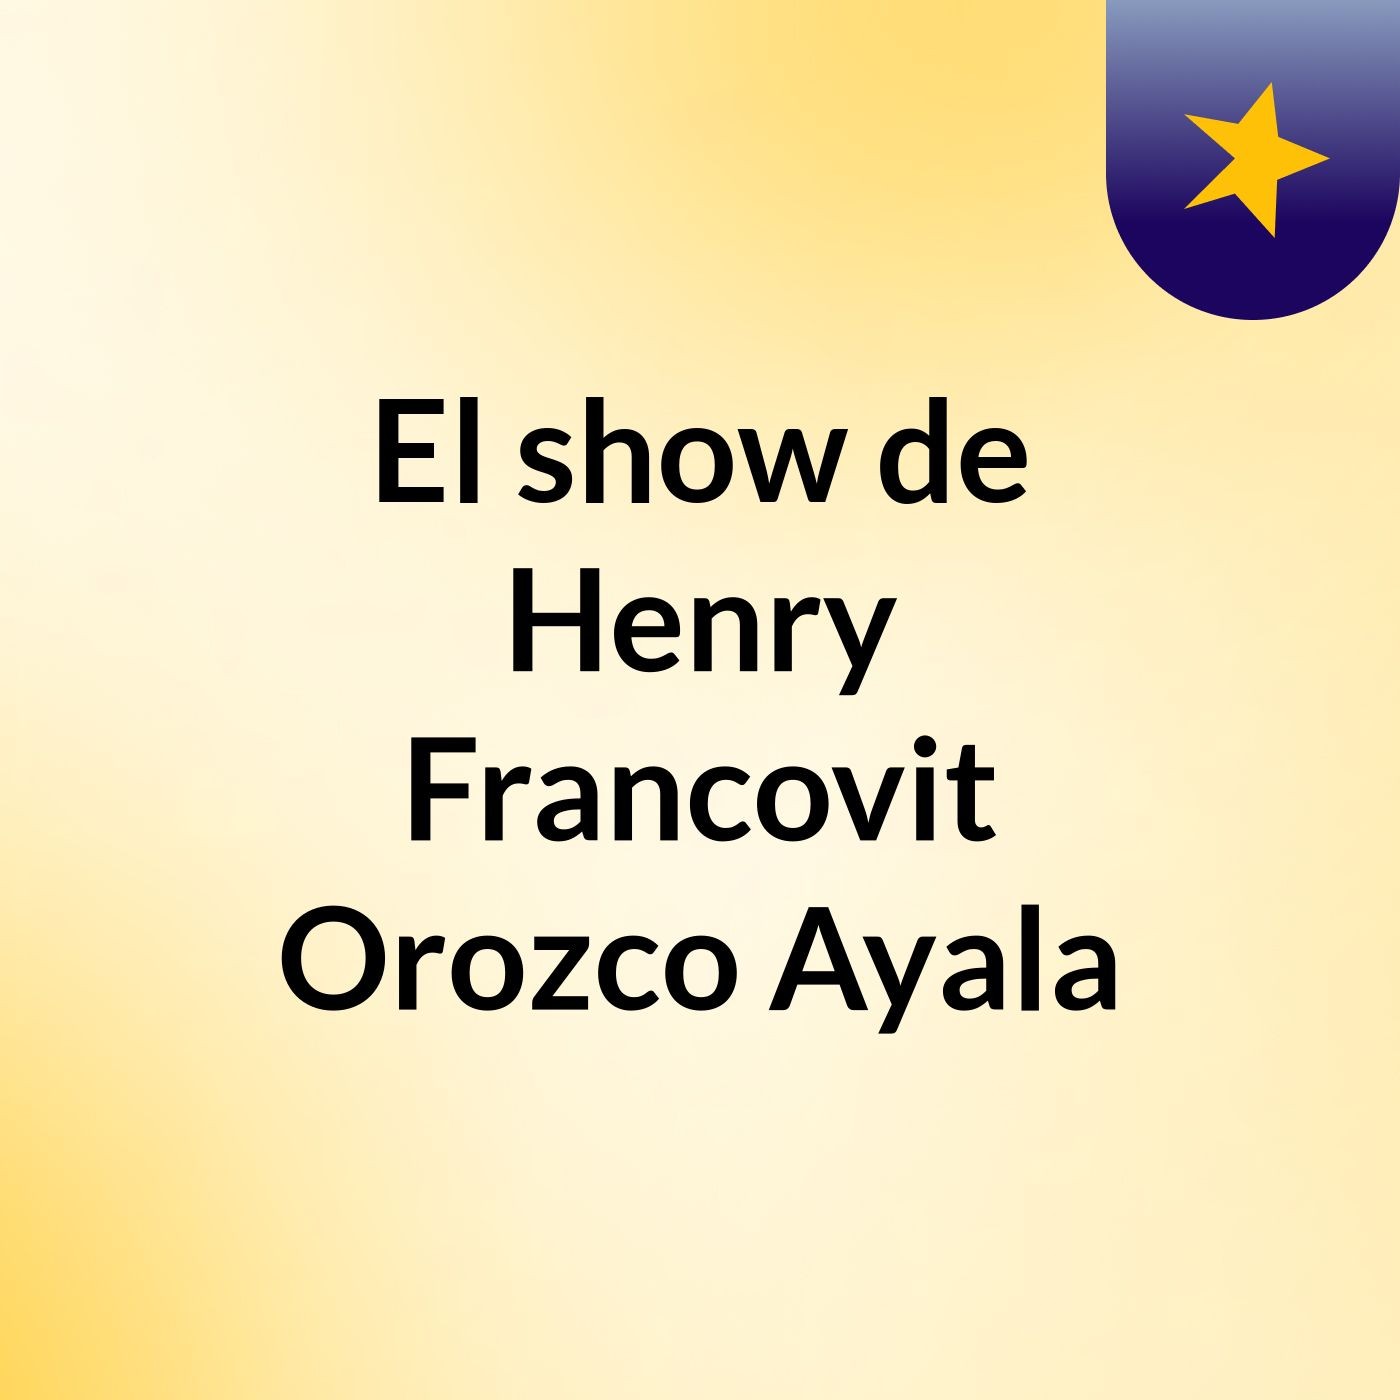 El show de Henry Francovit Orozco Ayala